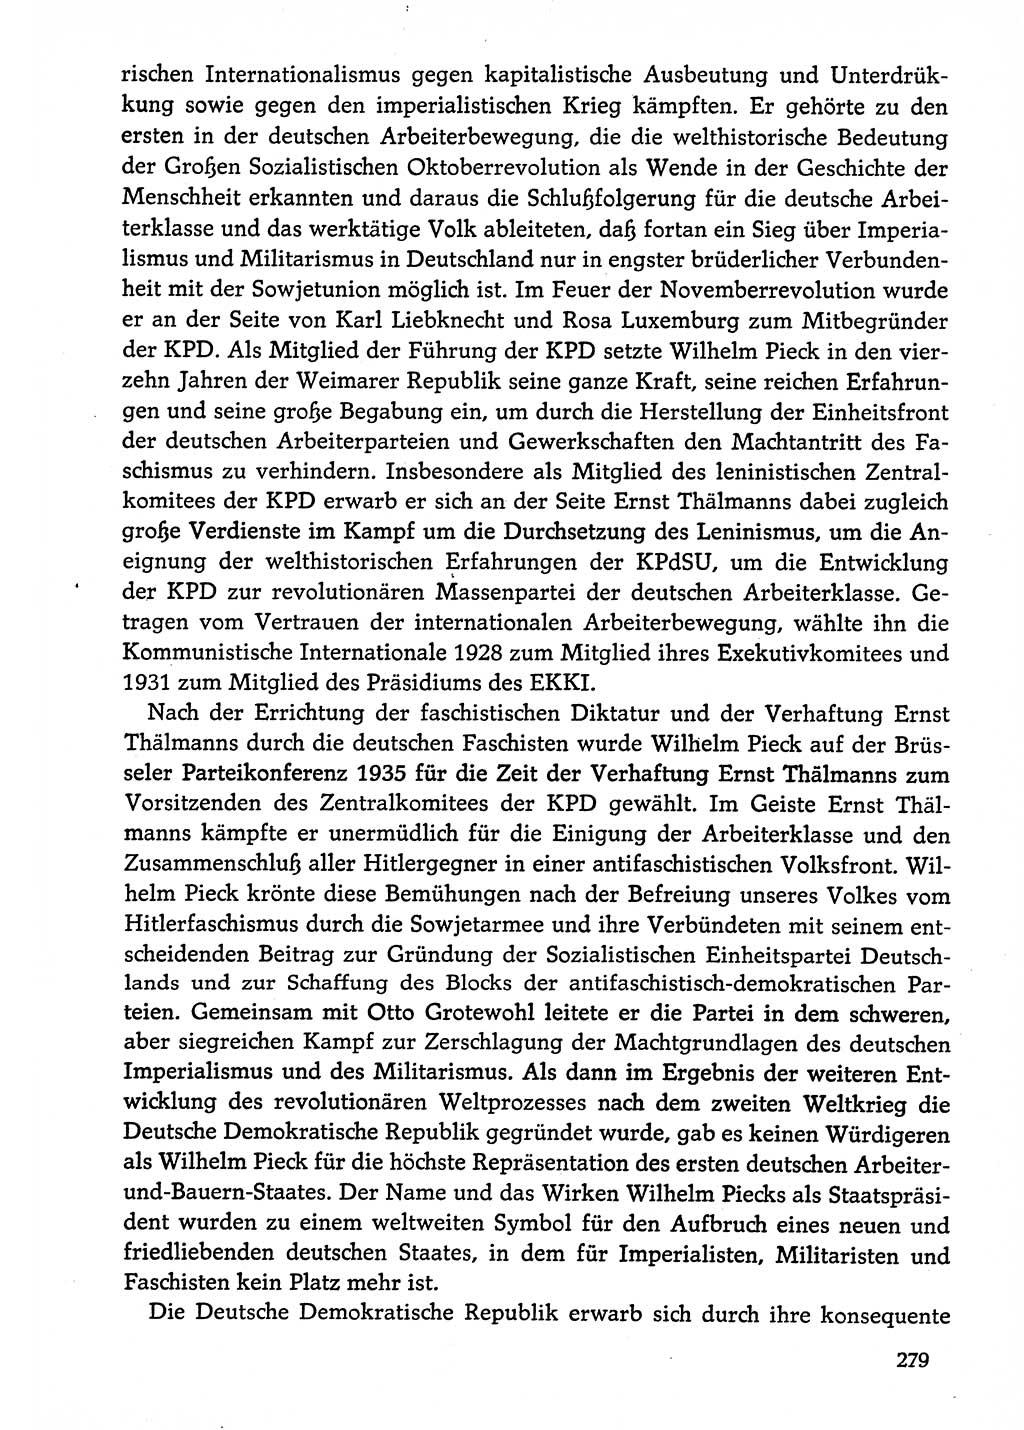 Dokumente der Sozialistischen Einheitspartei Deutschlands (SED) [Deutsche Demokratische Republik (DDR)] 1974-1975, Seite 279 (Dok. SED DDR 1978, Bd. ⅩⅤ, S. 279)